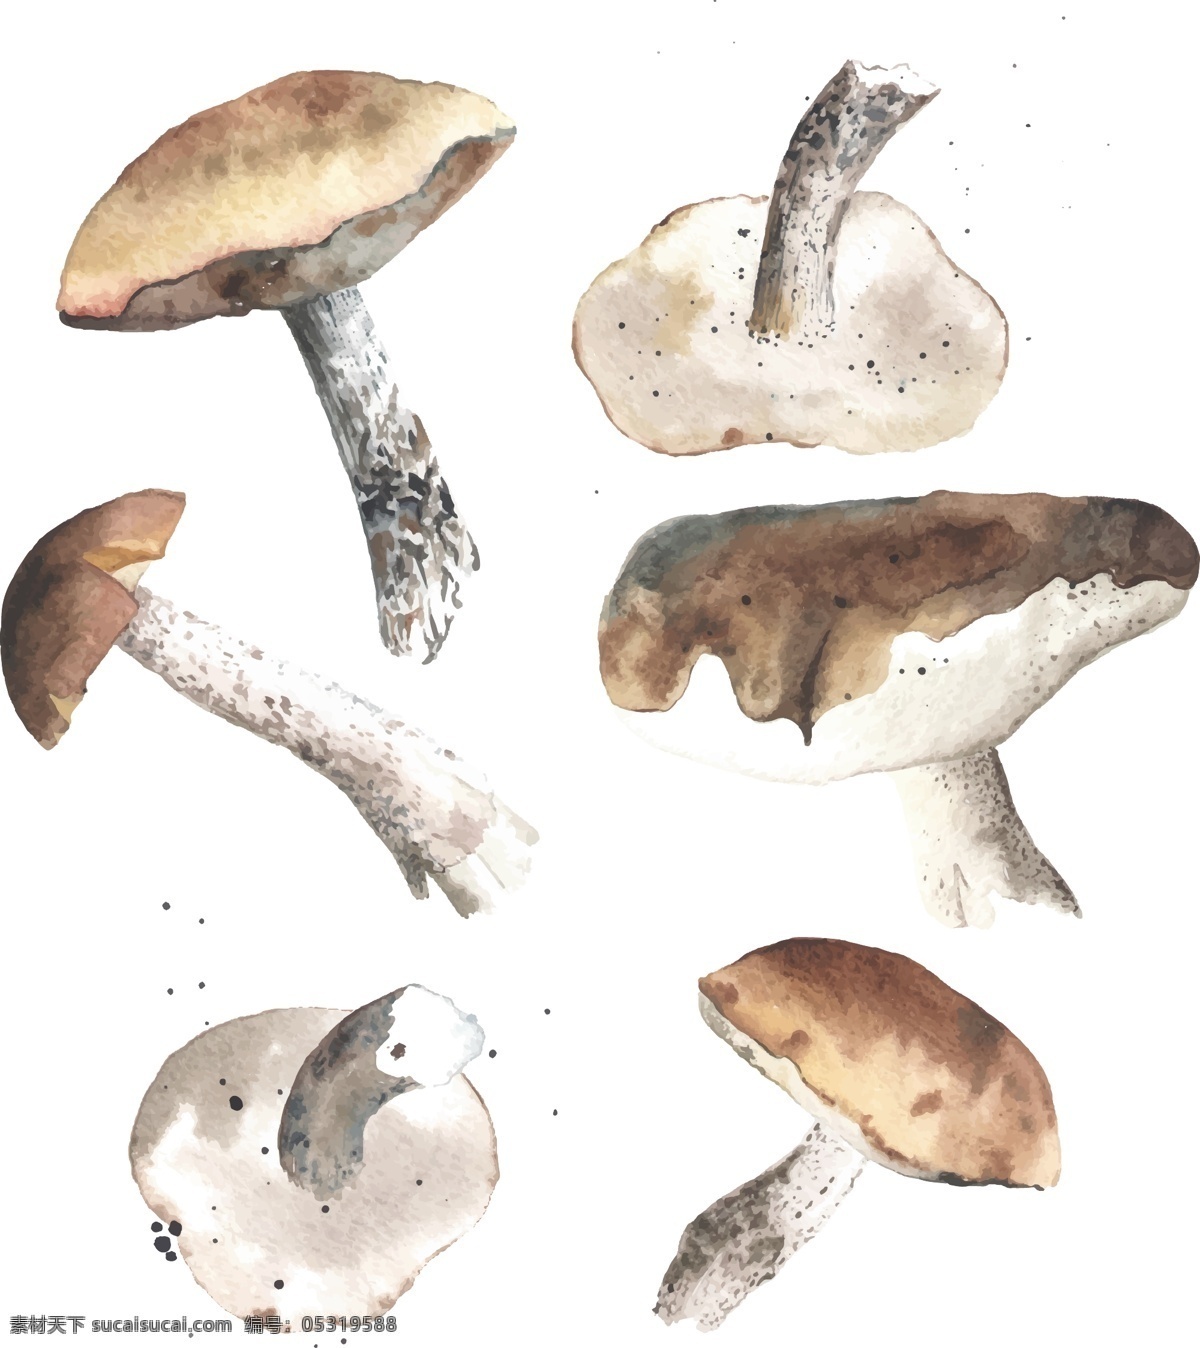 清新 水彩 绘 蘑菇 插画 菌类 时尚 手绘 水彩绘